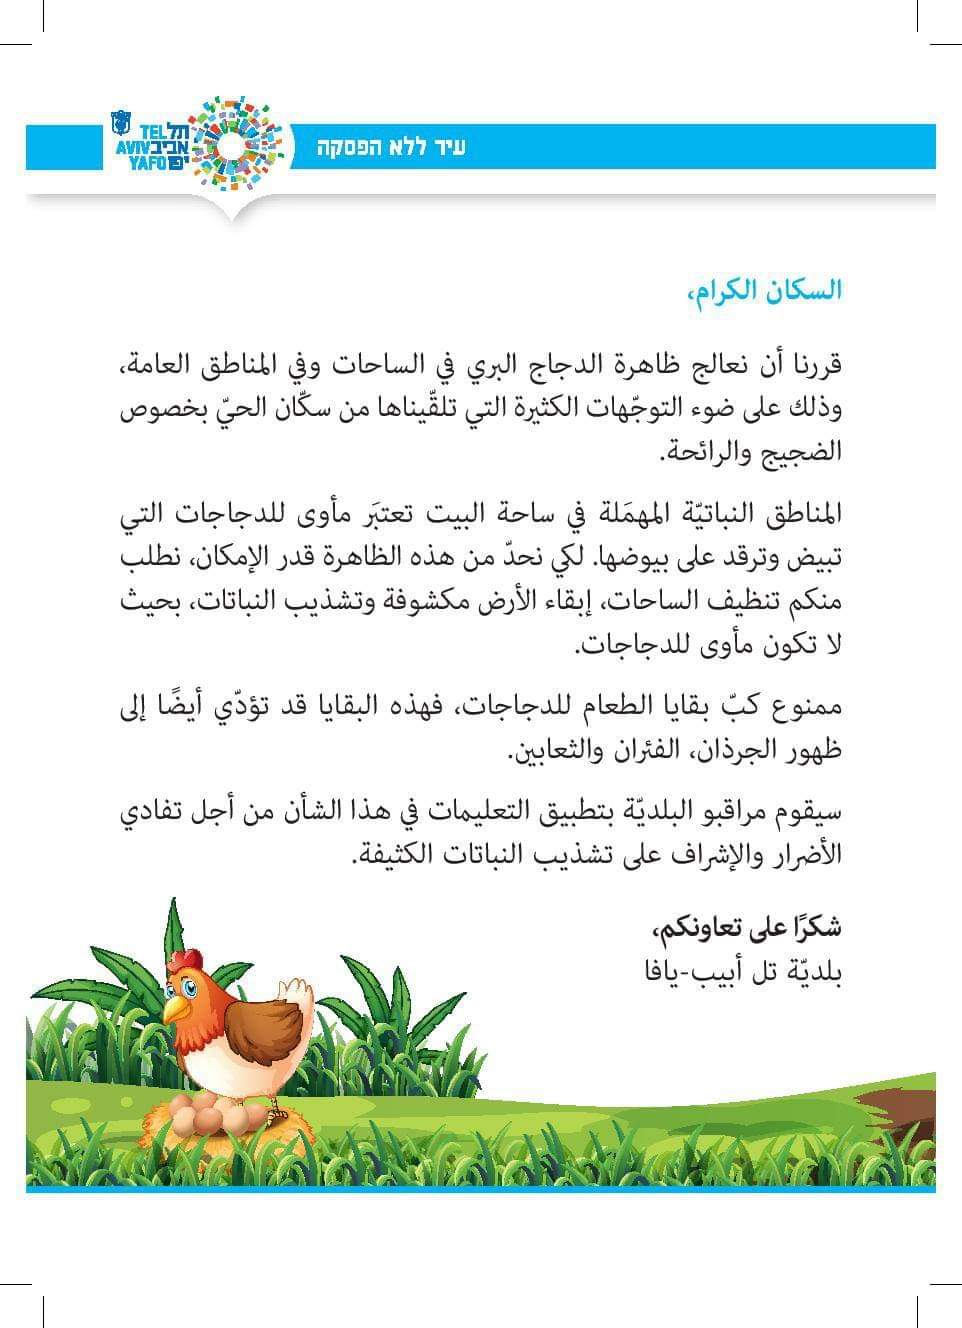 يافا: البلدية تعثر على عدوها الجديد وتقرر محاربة الدجاج والديوك بالمدينة